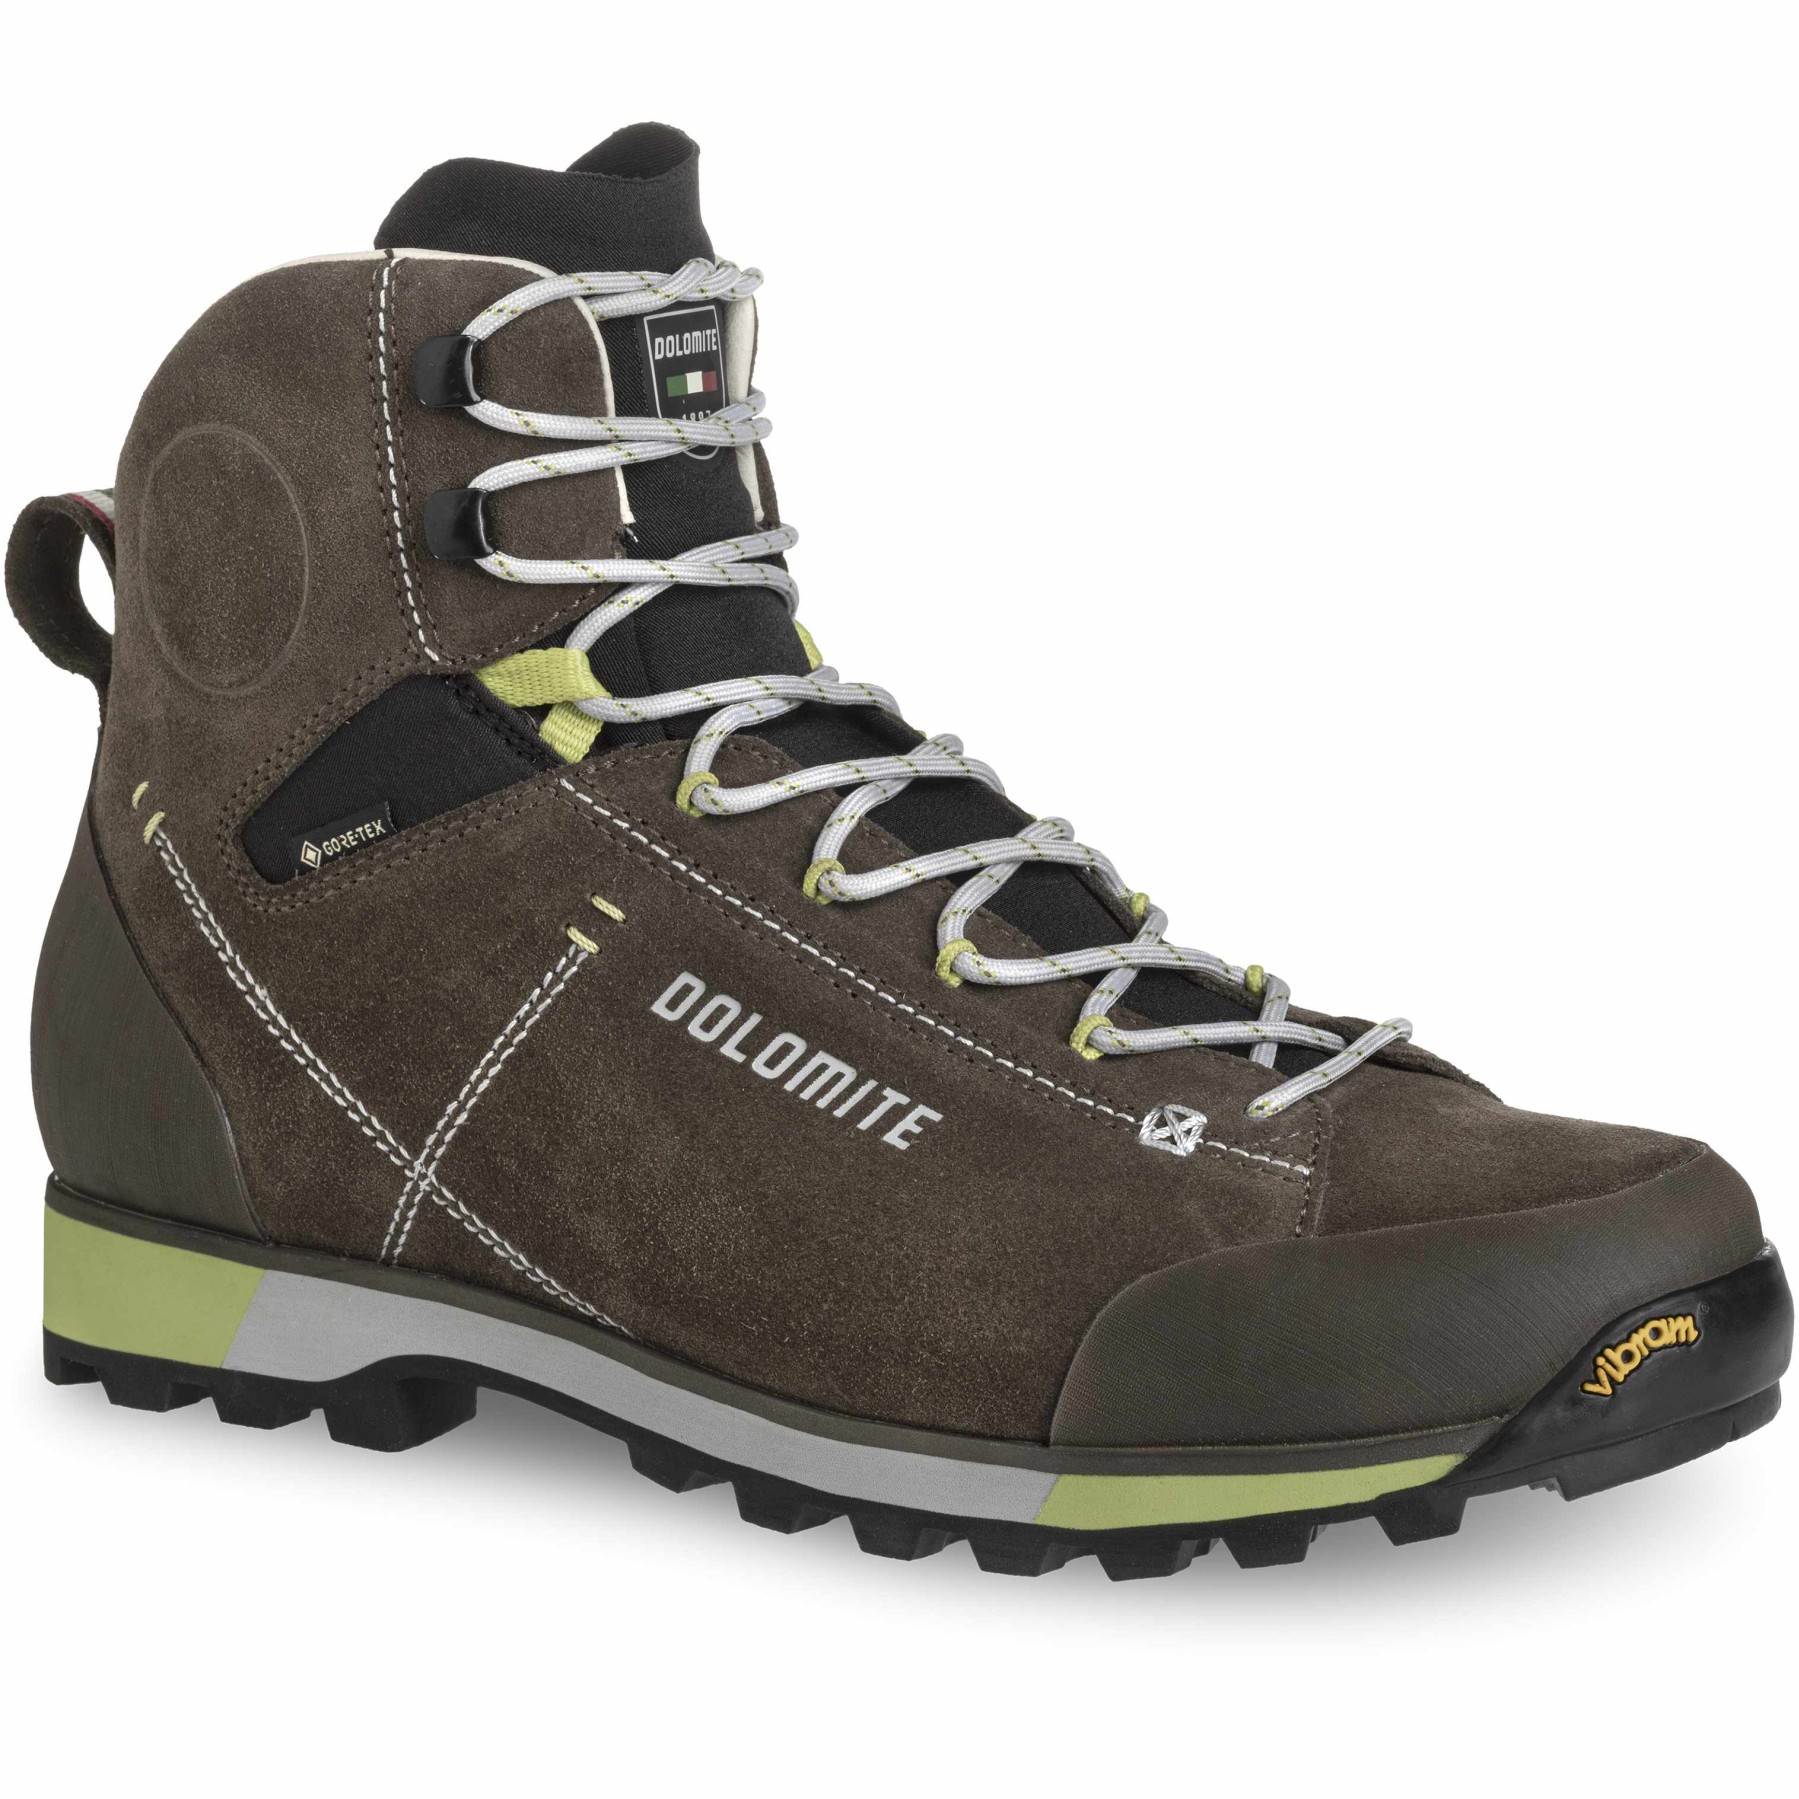 Productfoto van Dolomite 54 Hike Evo GTX Schoenen Heren - mud green/green